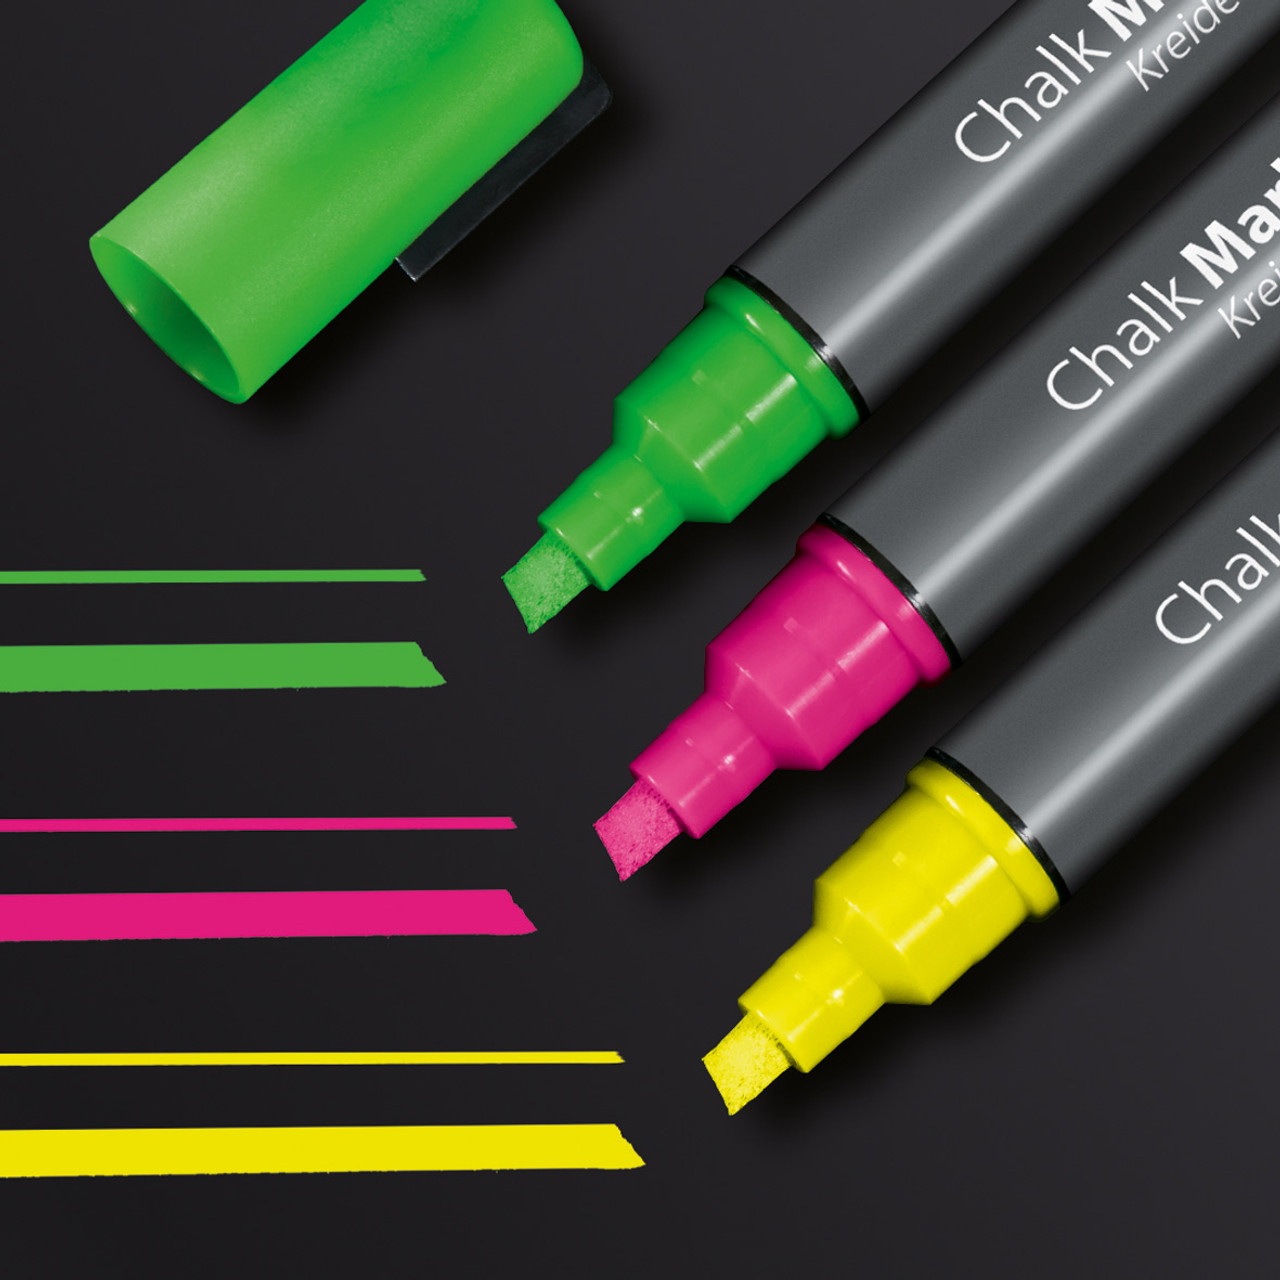 Sigel Multi-Colored Chalk Markers for Magnetic Glass Boards, 3-Pack -  Bindertek